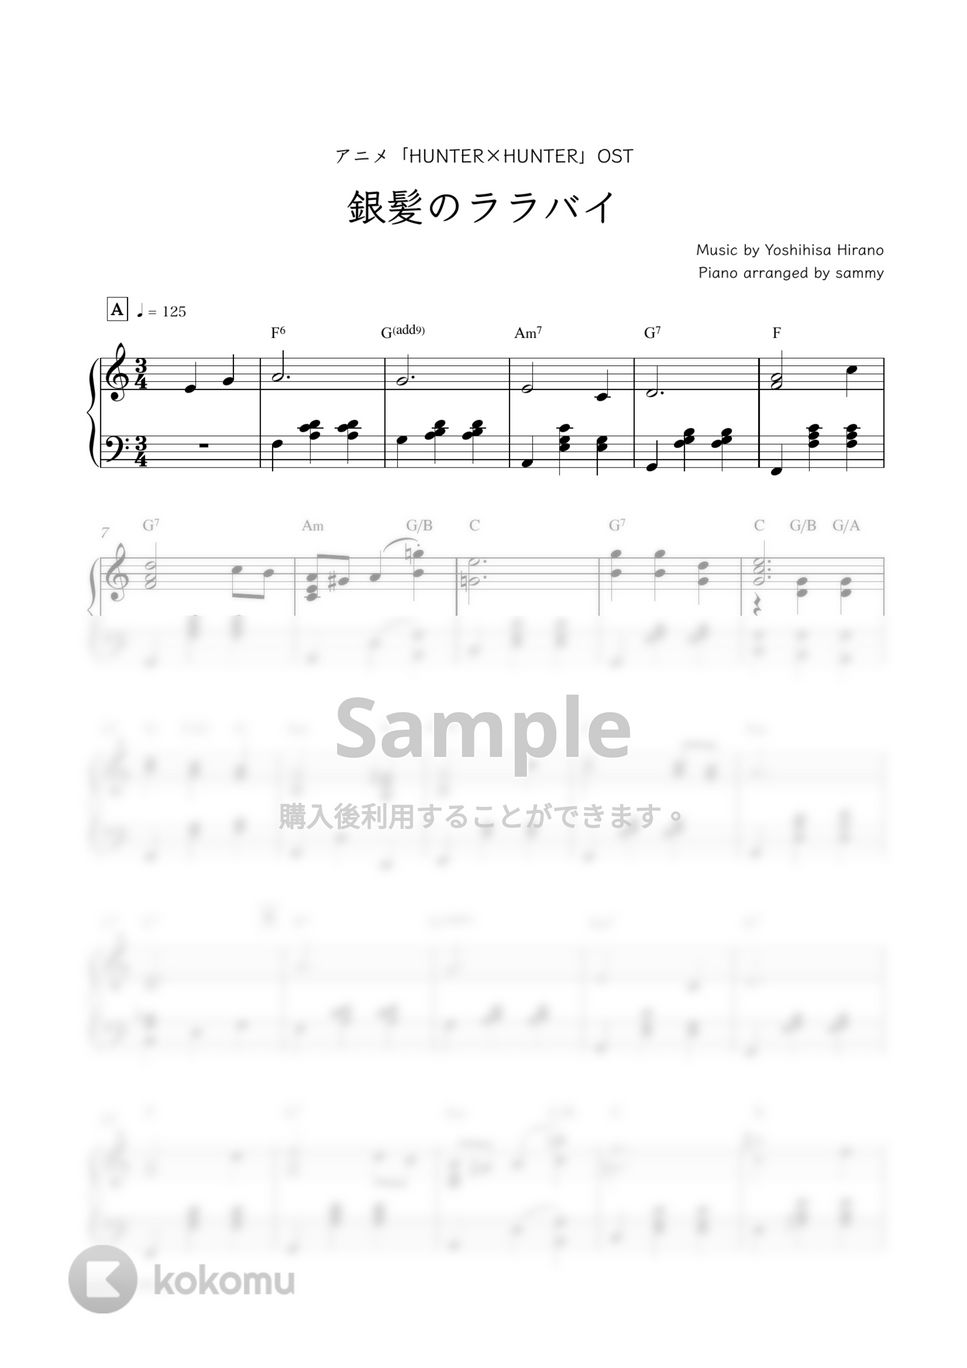 アニメ『HUNTER×HUNTER』OST - 銀髪のララバイ by sammy